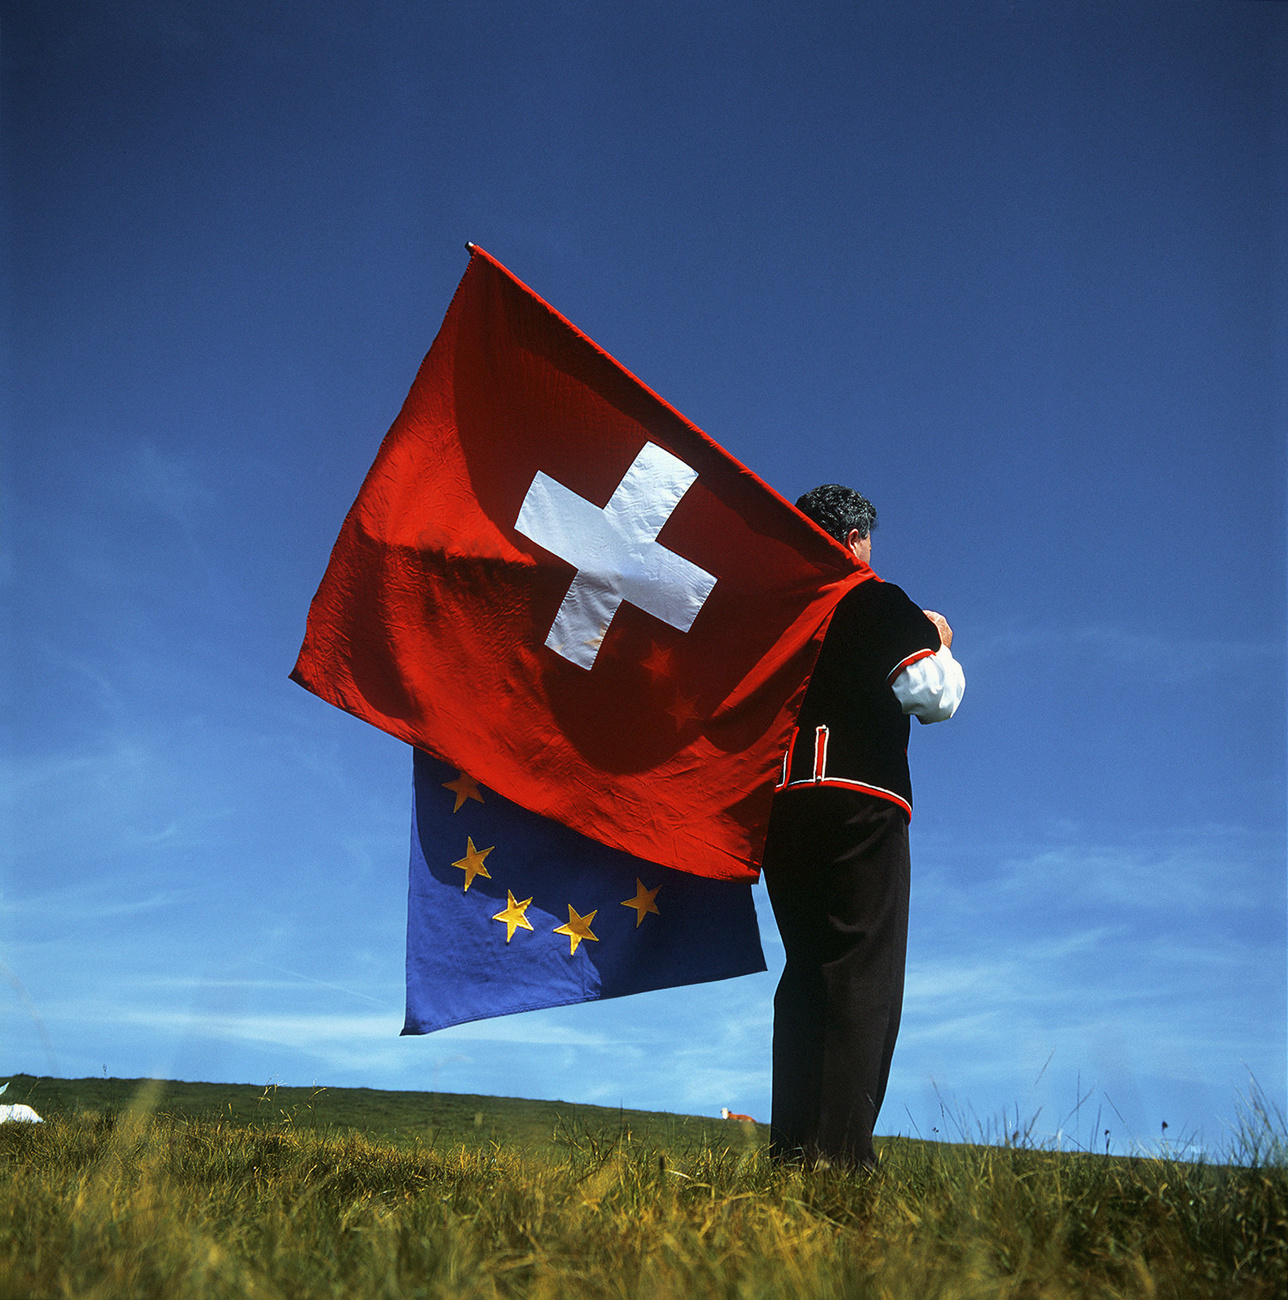 Ein Fahnenschwinger mit Schweizerflagge und EU-Flagge, alles gut sortiert.